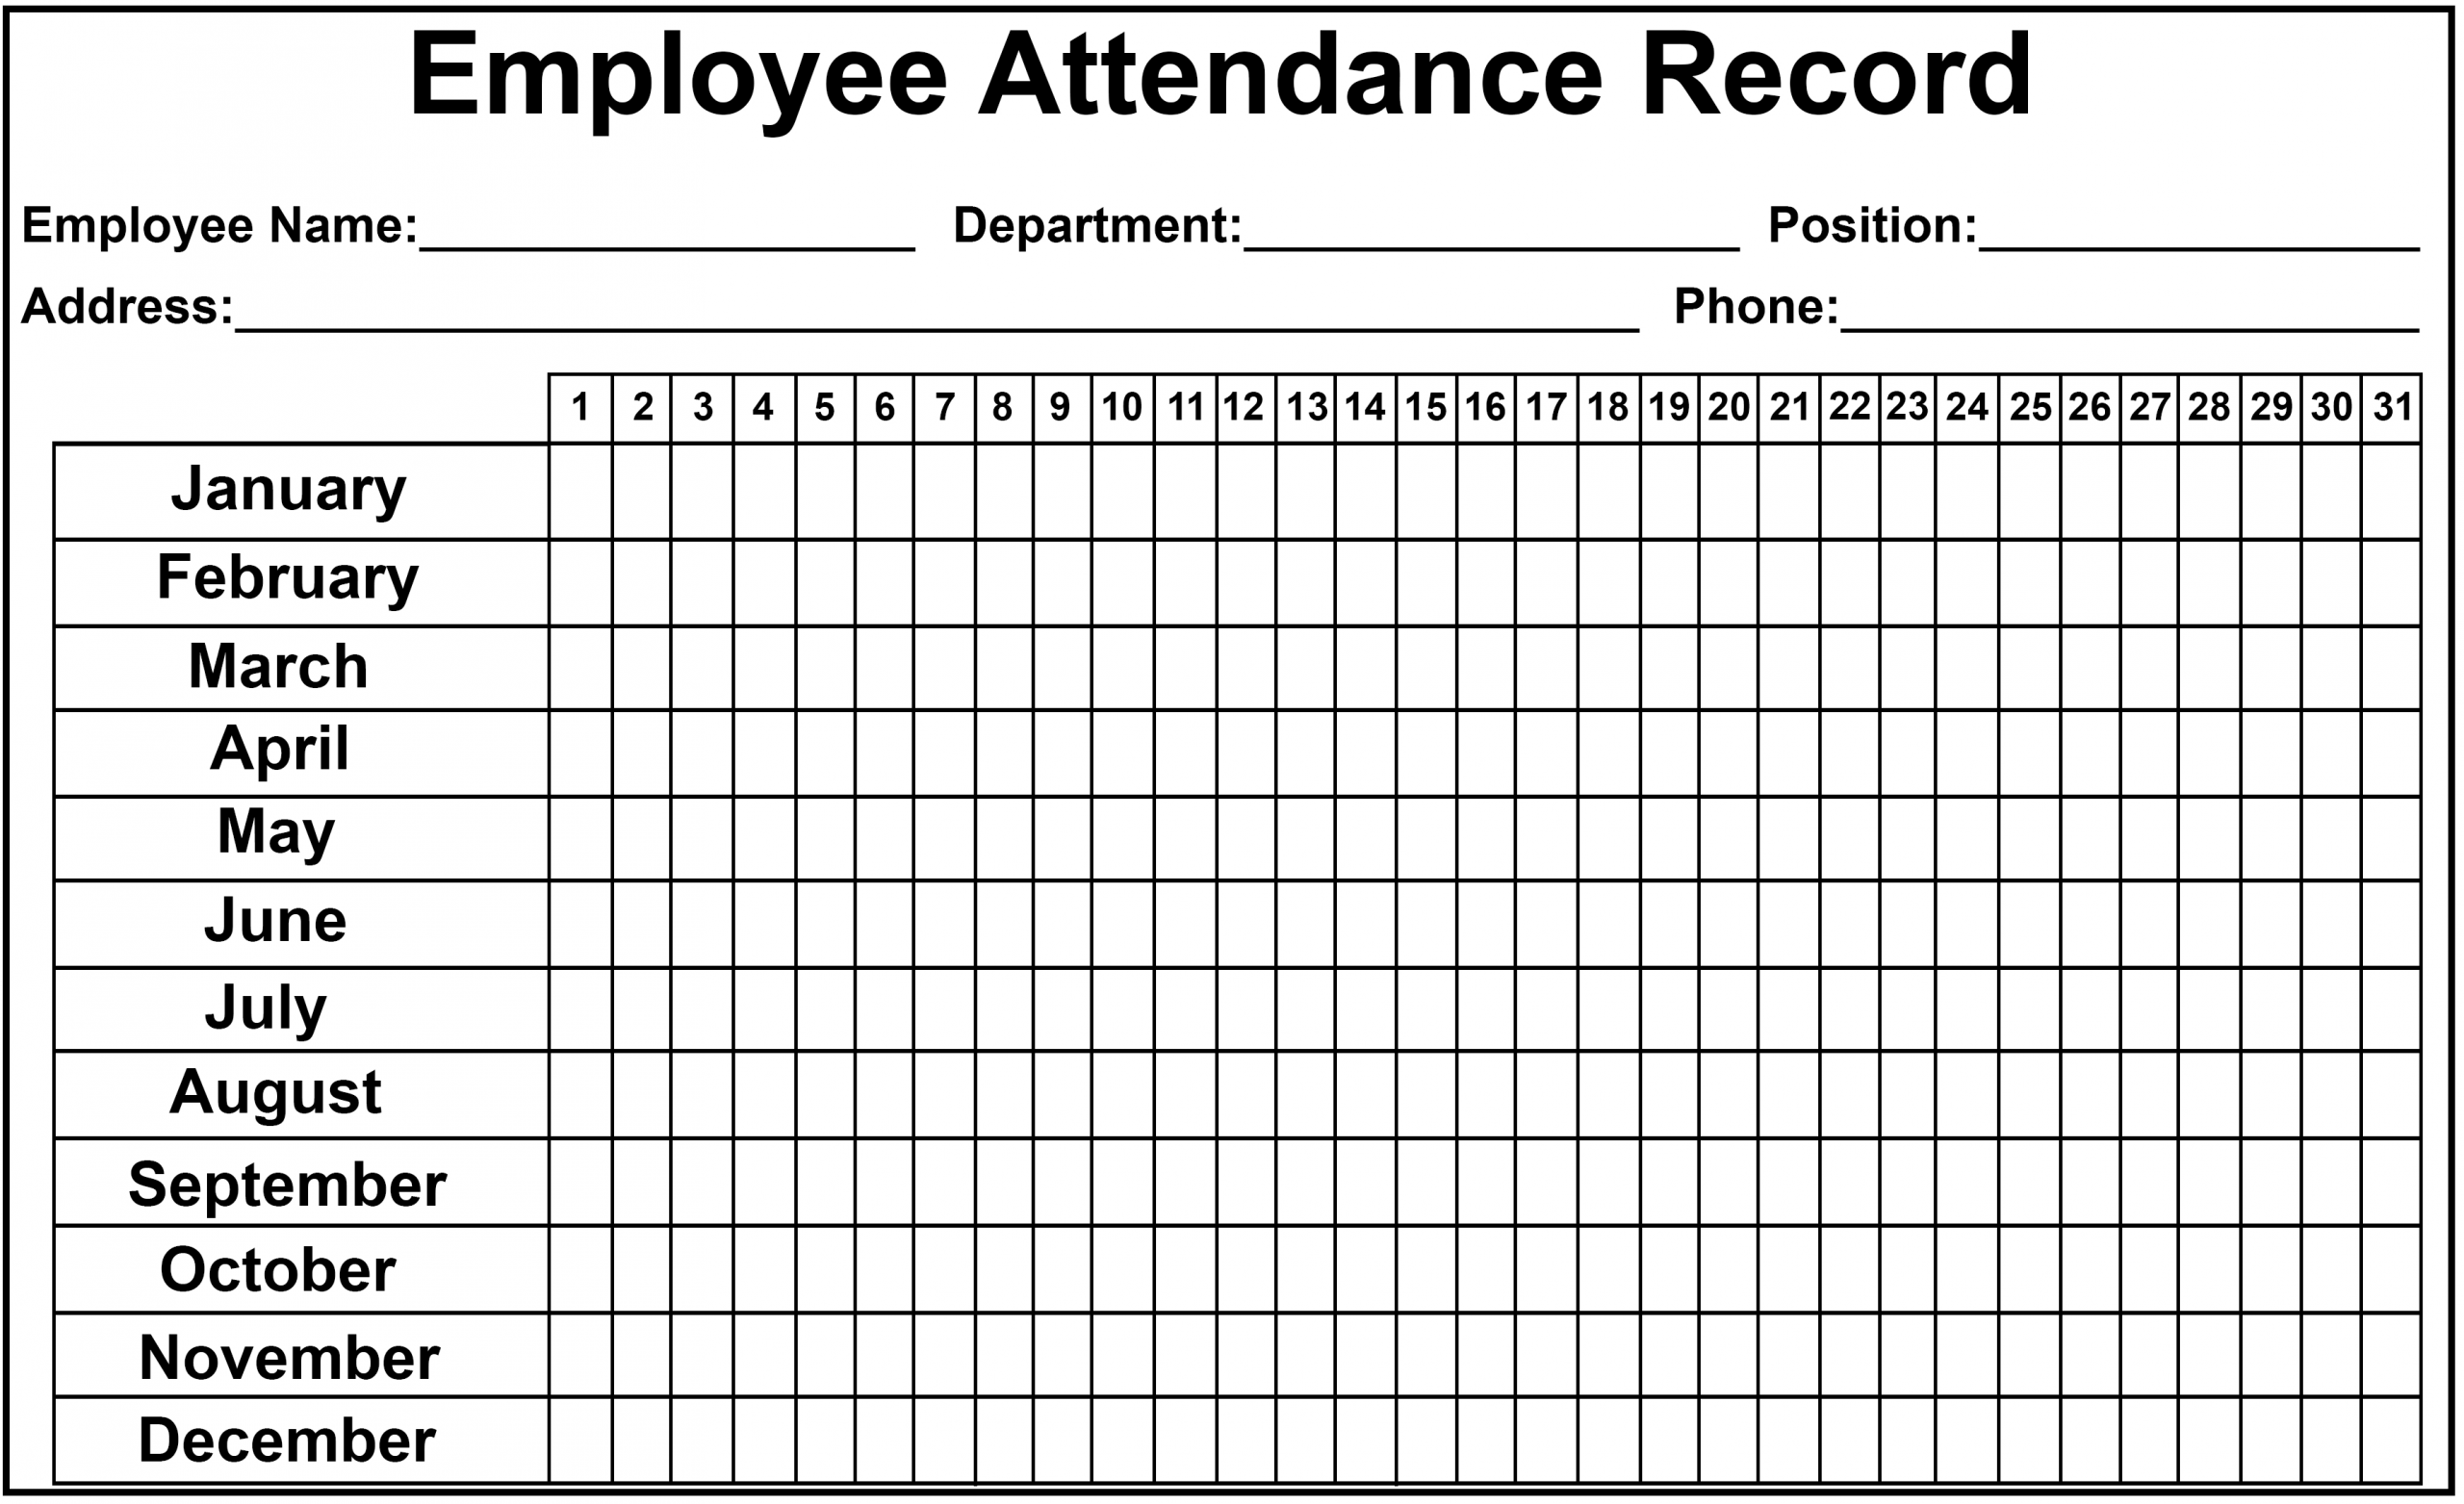 Employee Attendance Tracker Sheet 2019